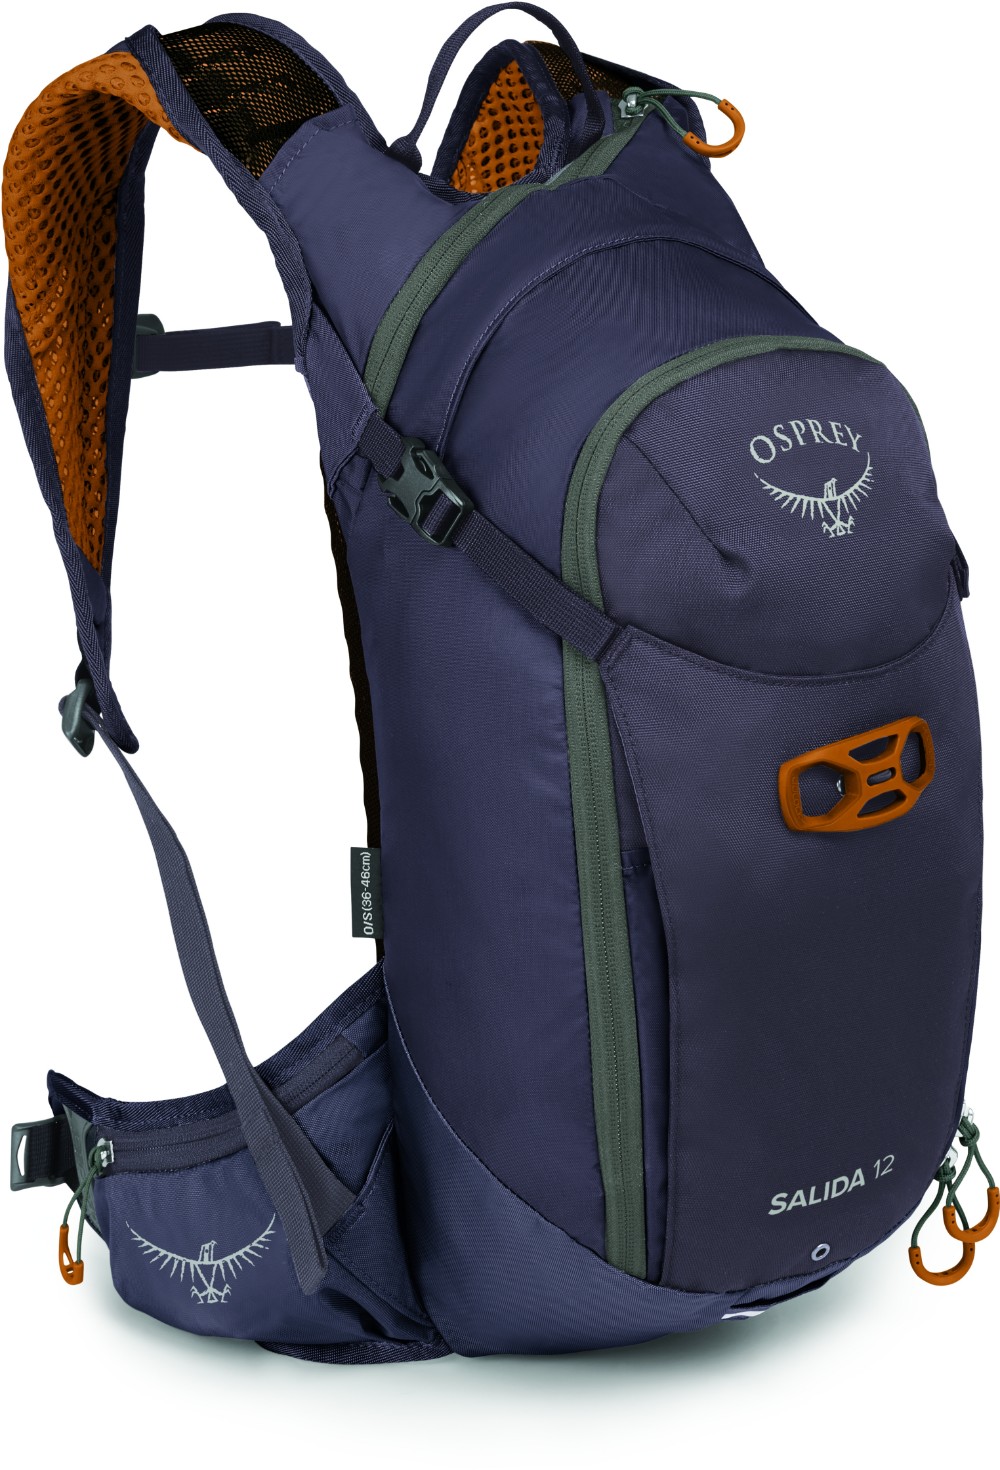 Salida 12 Backpack with 2.5L Reservoir image 0